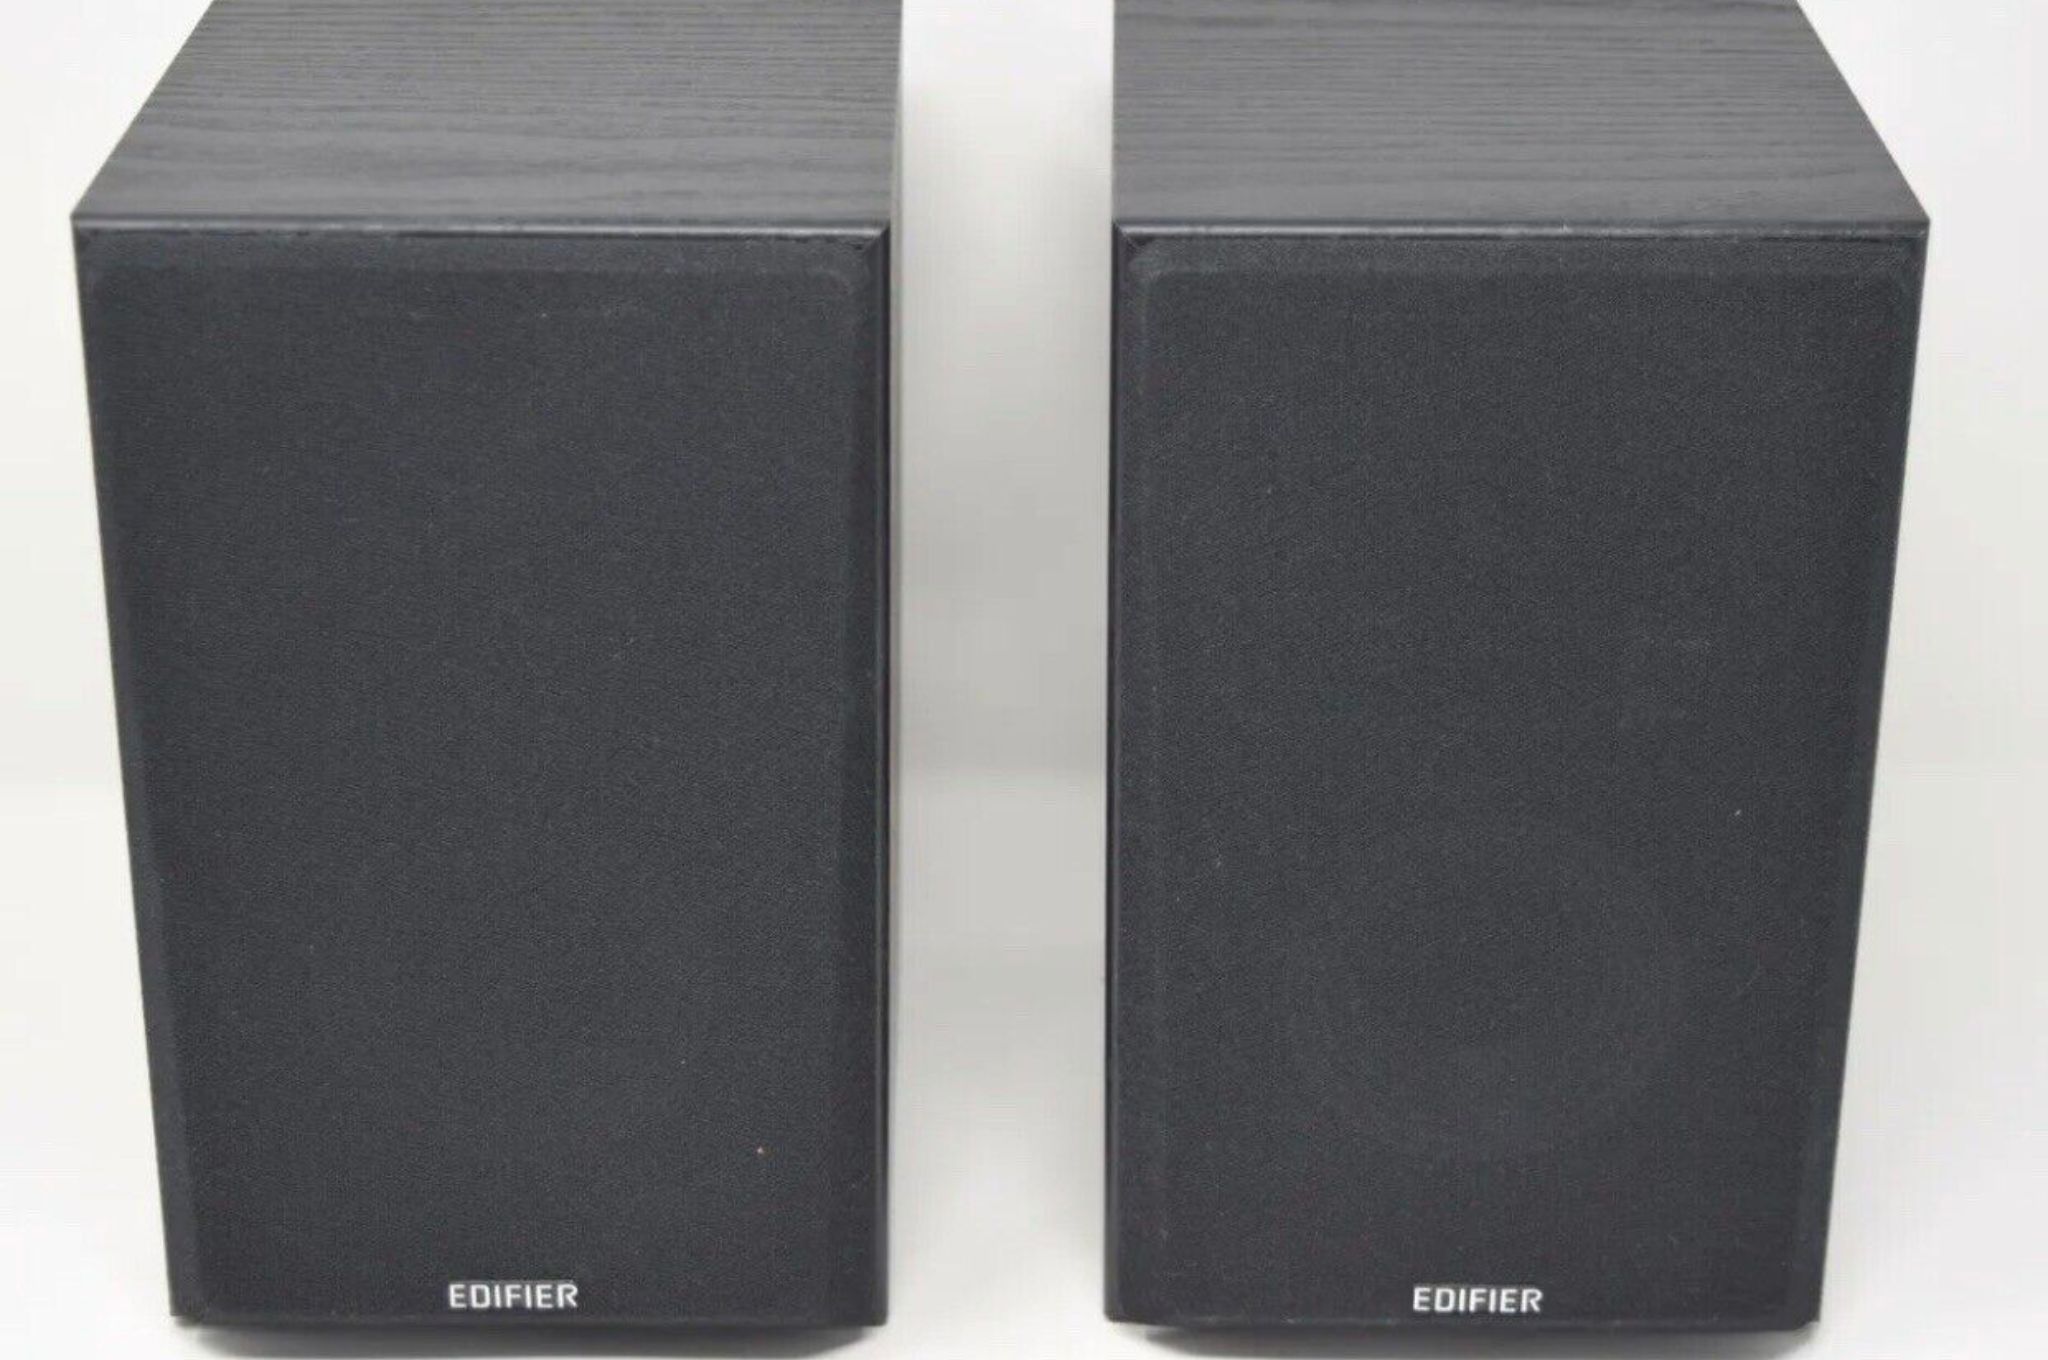 Edifier R980T speakers